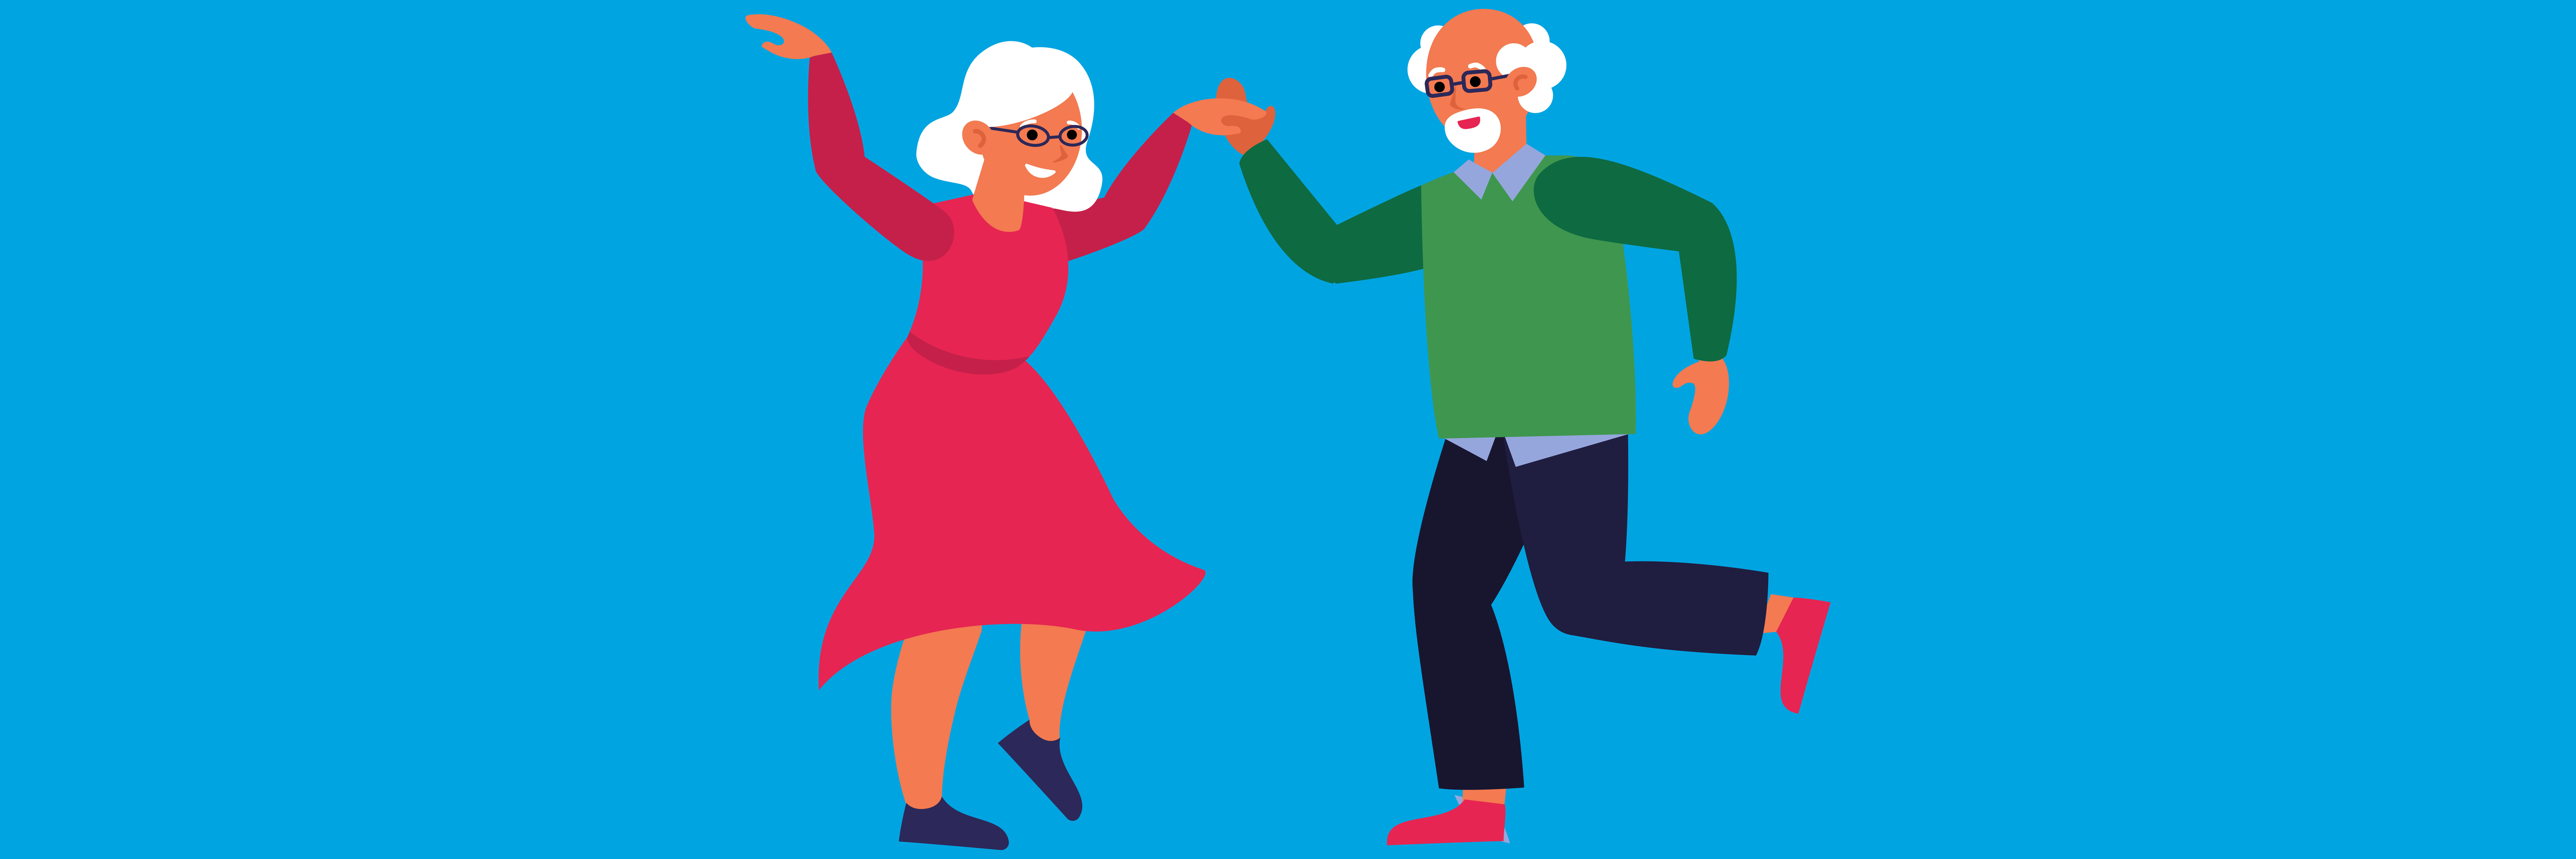 Beweglichkeit und Koordination durch Tanzen - Parkinson-Krankheit